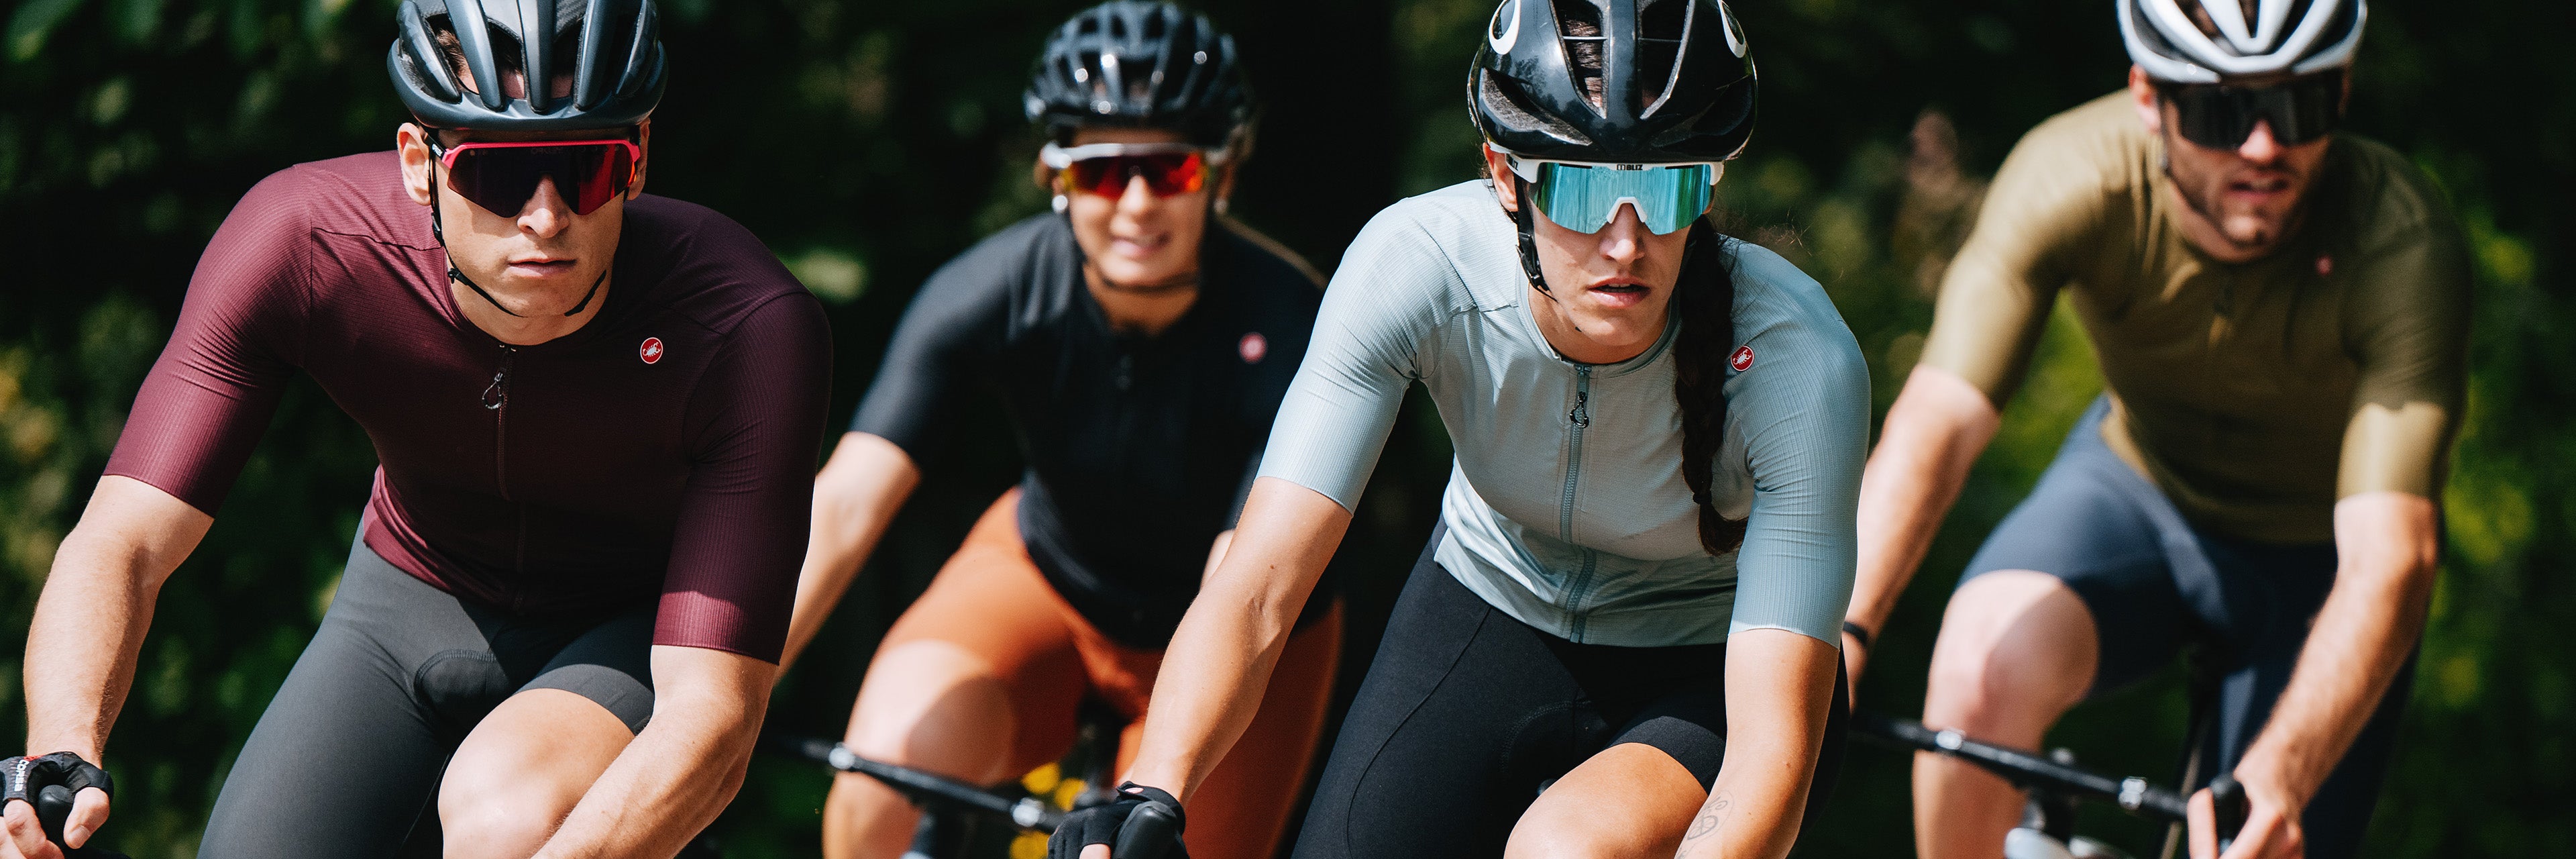 Zwaaien brand inhoud Fietskleding kopen | Passion for Cycling – Passion for cycling Shop